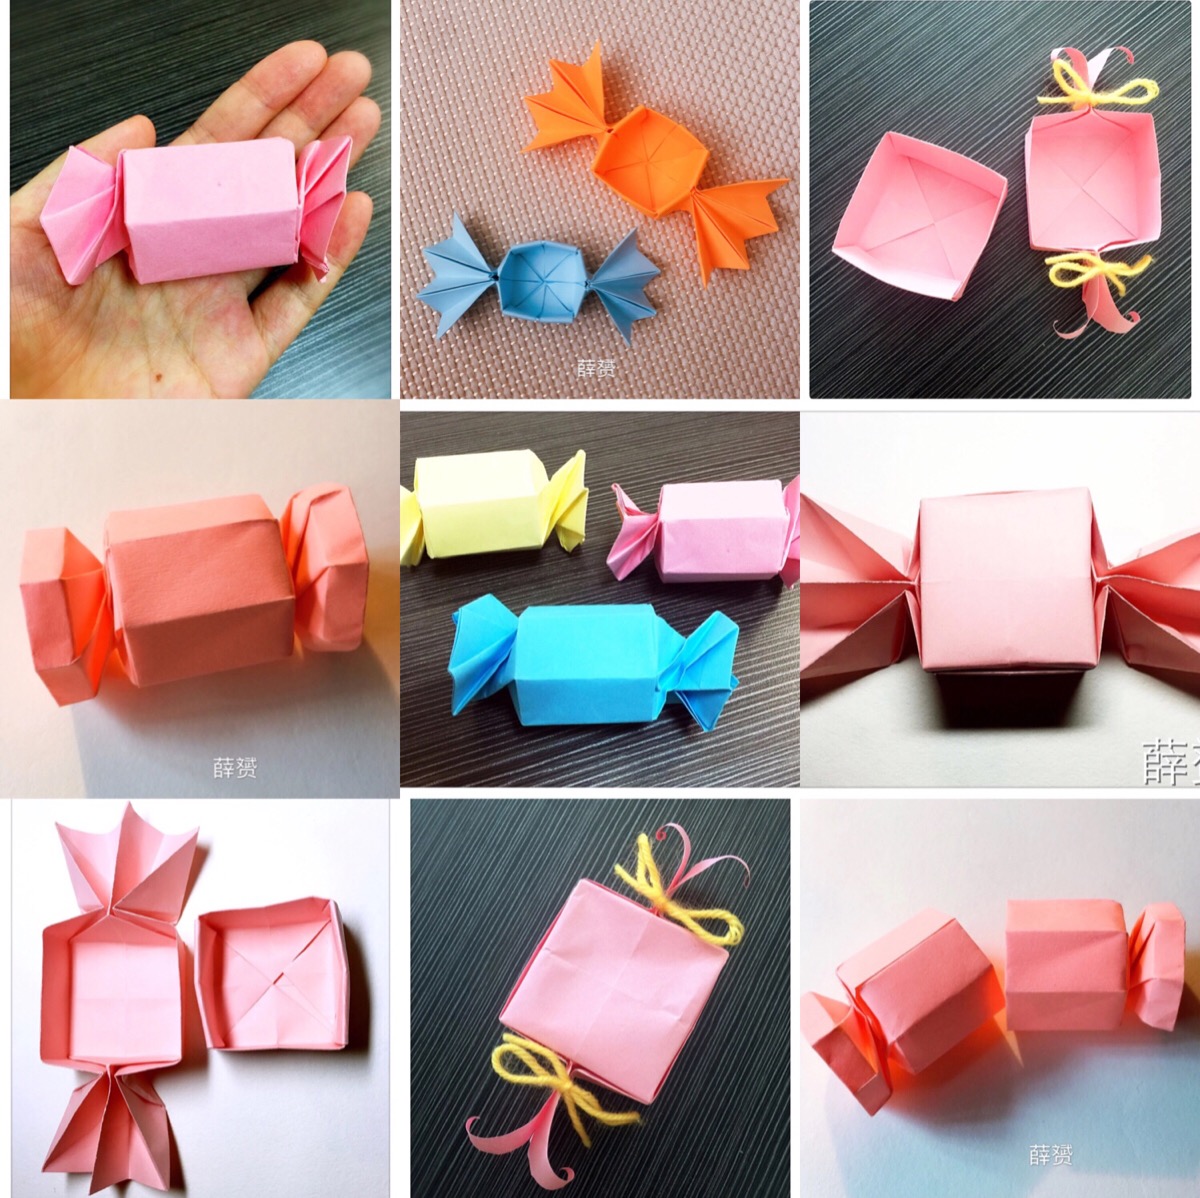 糖果包装纸怎么做手工图片